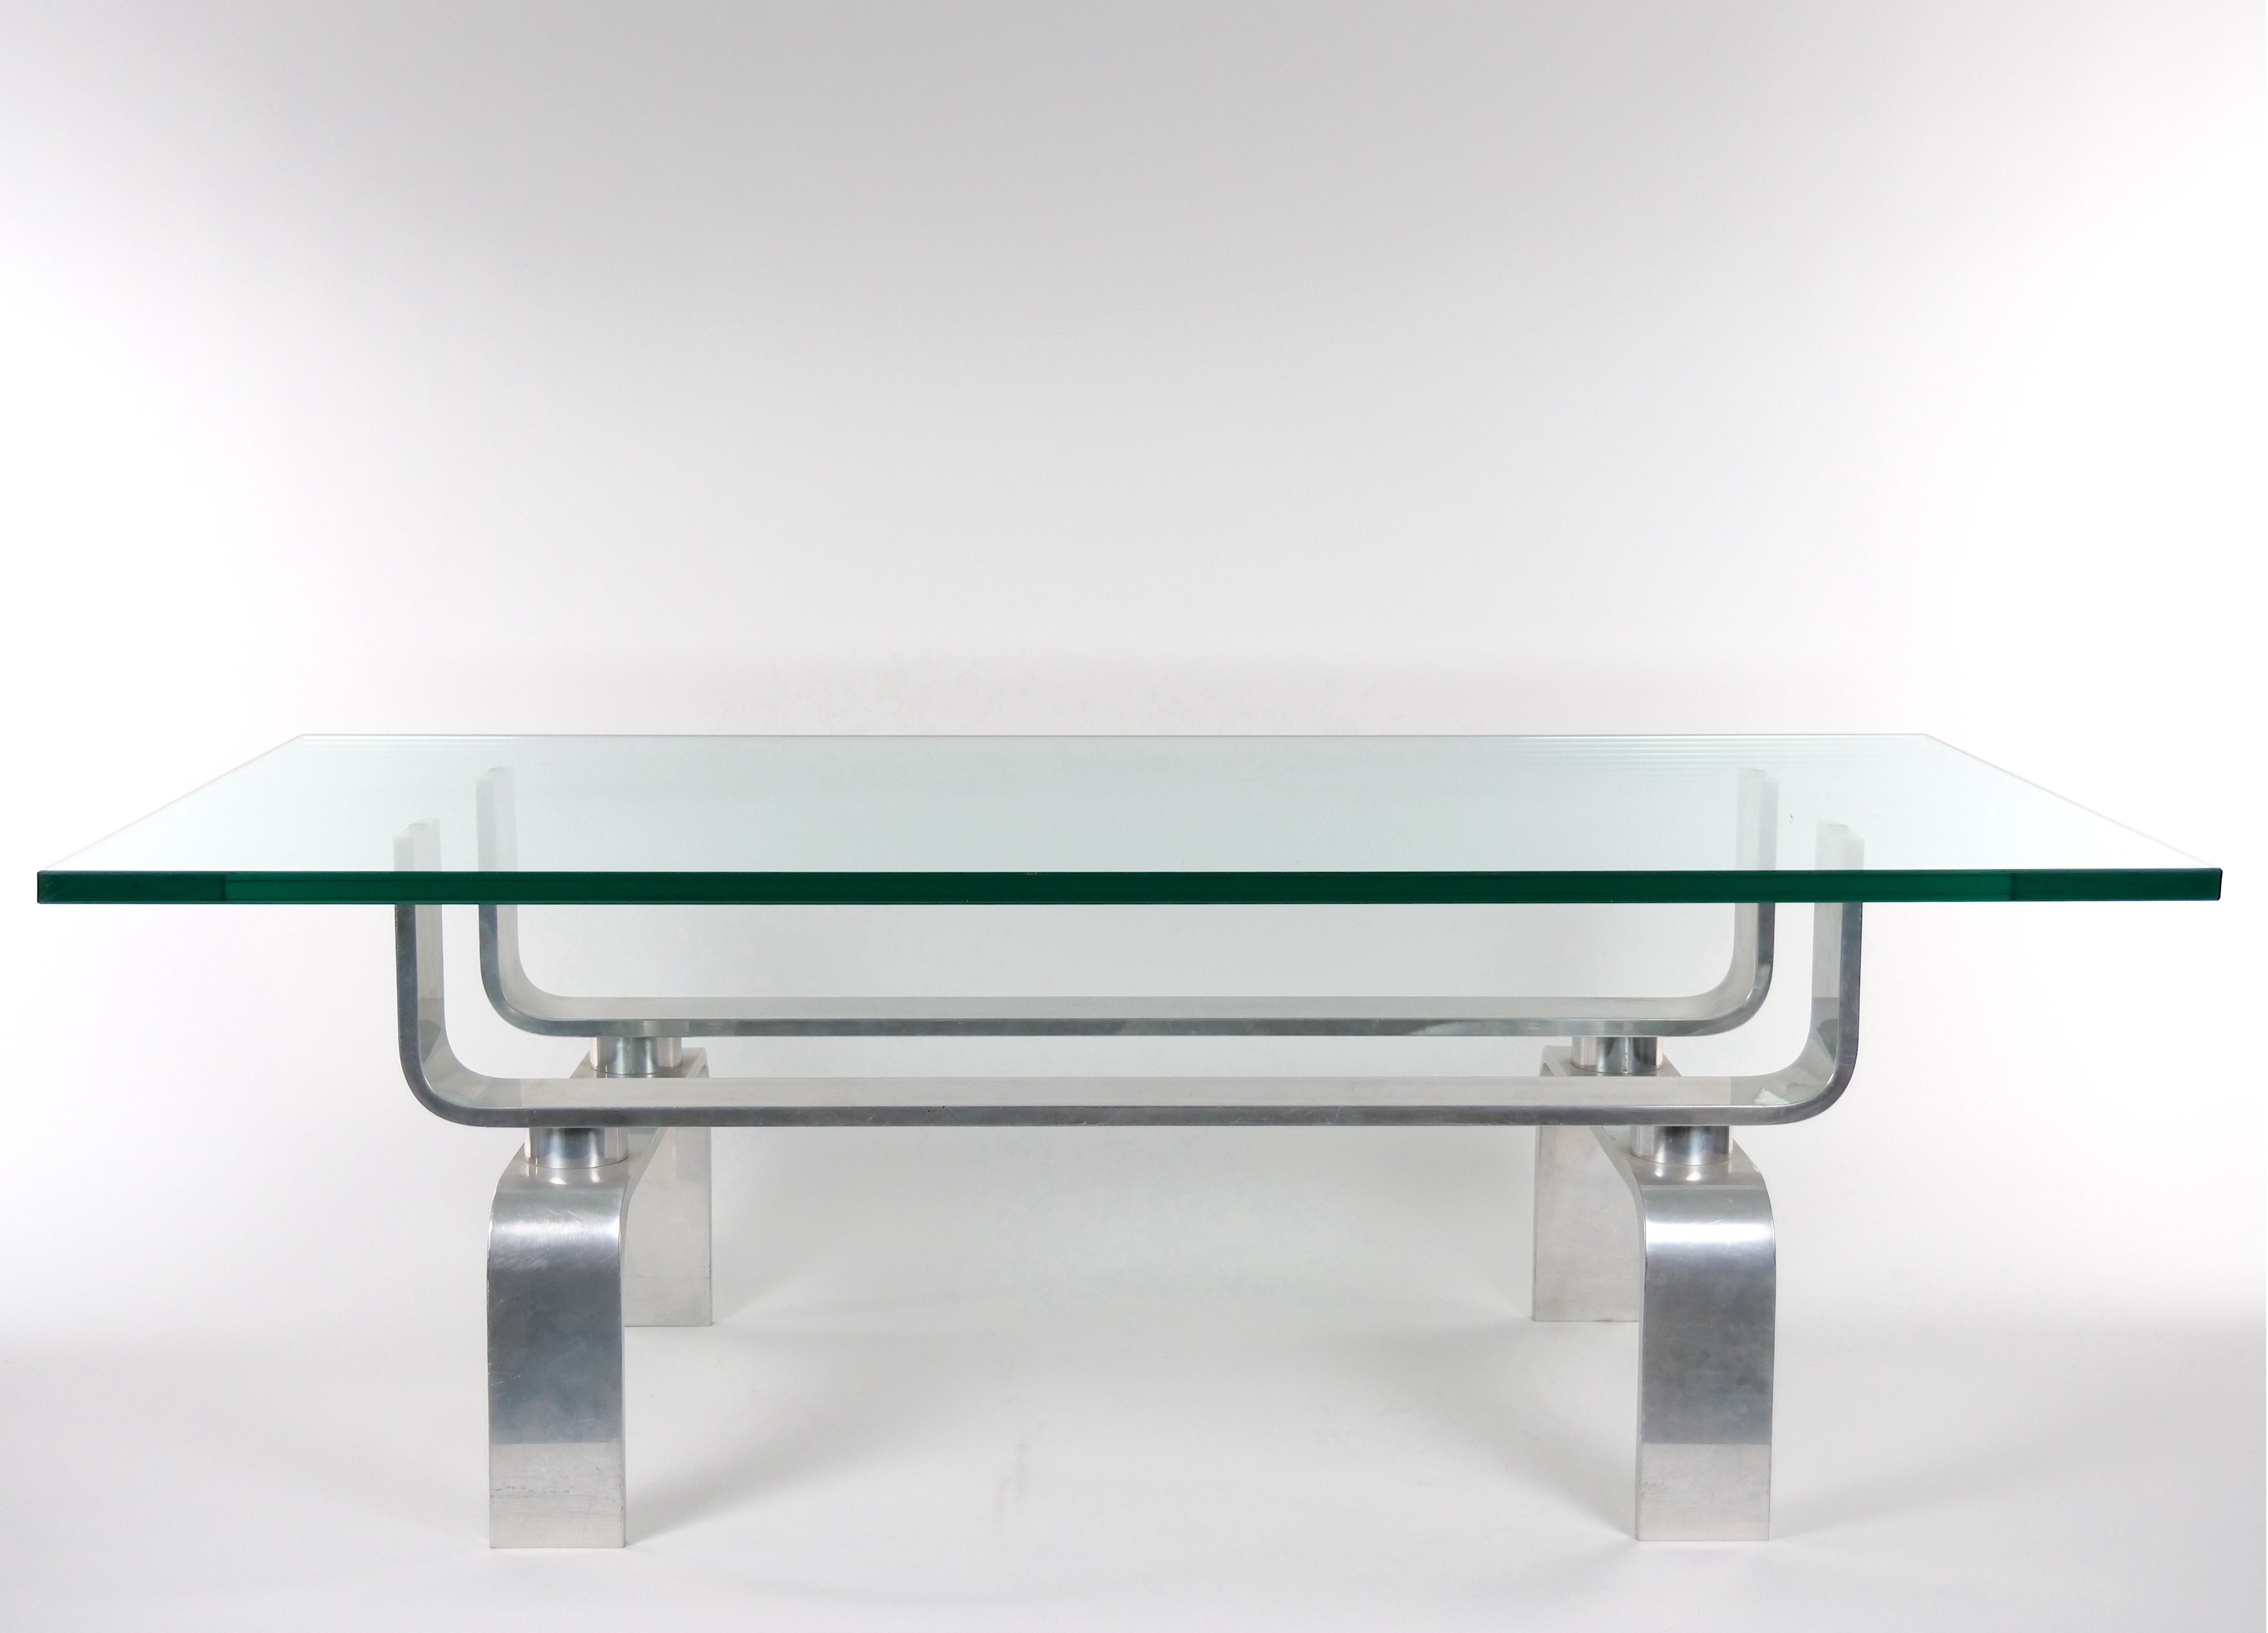 
Découvrez l'allure intemporelle du design moderne du milieu du siècle avec cette table basse captivante. Dotée d'une base en aluminium et d'un plateau en verre épais, cette table allie sans effort sophistication élégante et fonctionnalité robuste.